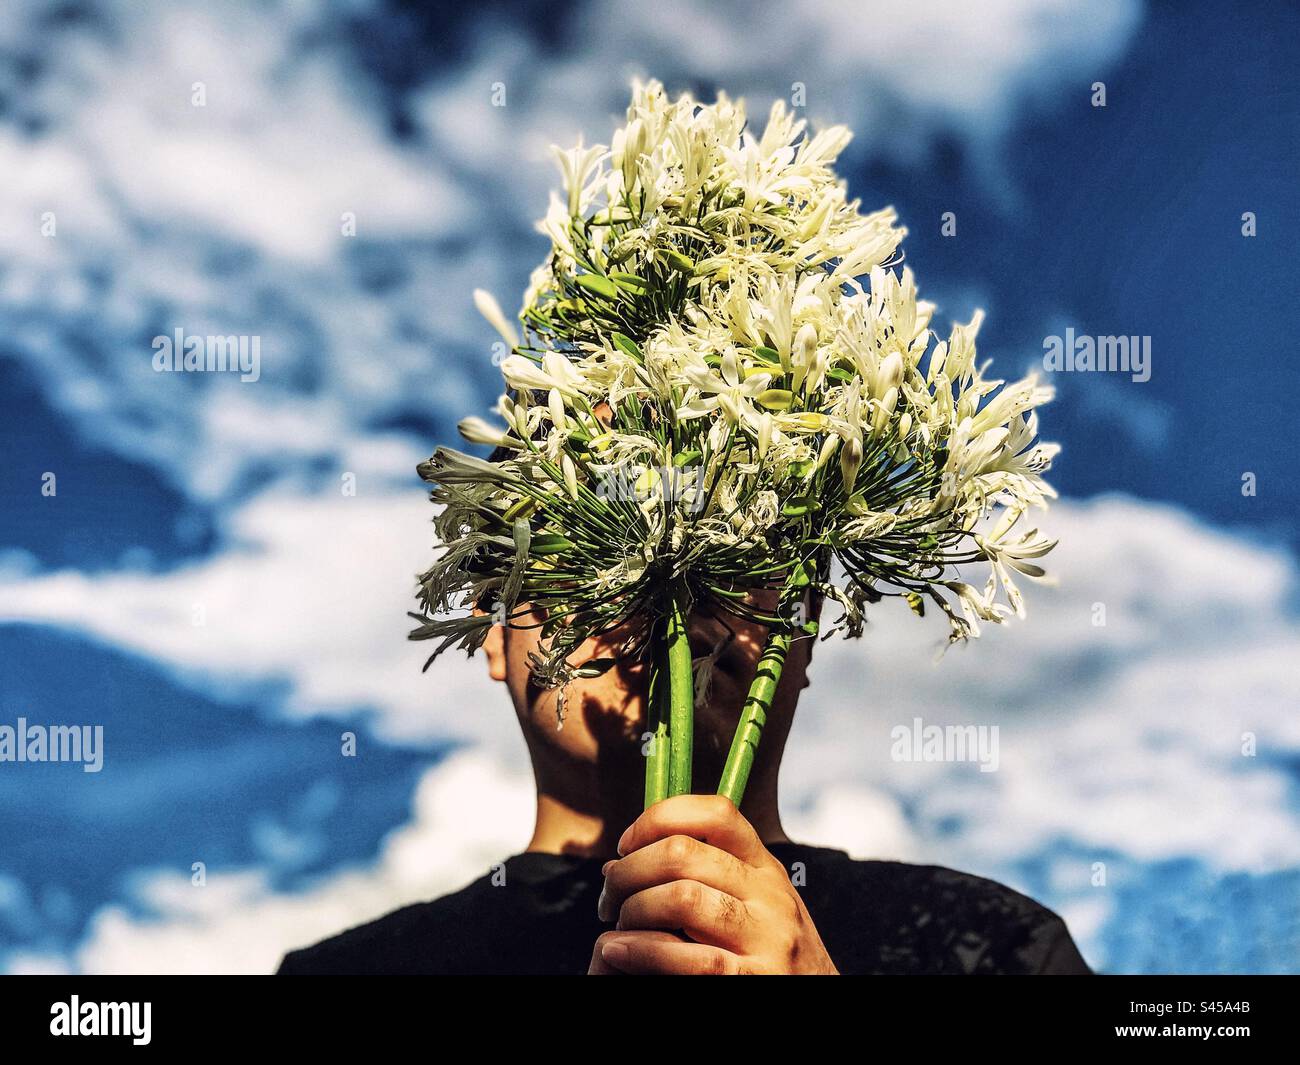 Portrait rapproché d'un jeune homme tenant un bouquet de fleurs blanches d'Agapanthus africanus alias lys africain, lys du Nil contre un paysage nuageux dans le ciel bleu. Visage obscurci. Mode. Thème printemps/été. Banque D'Images